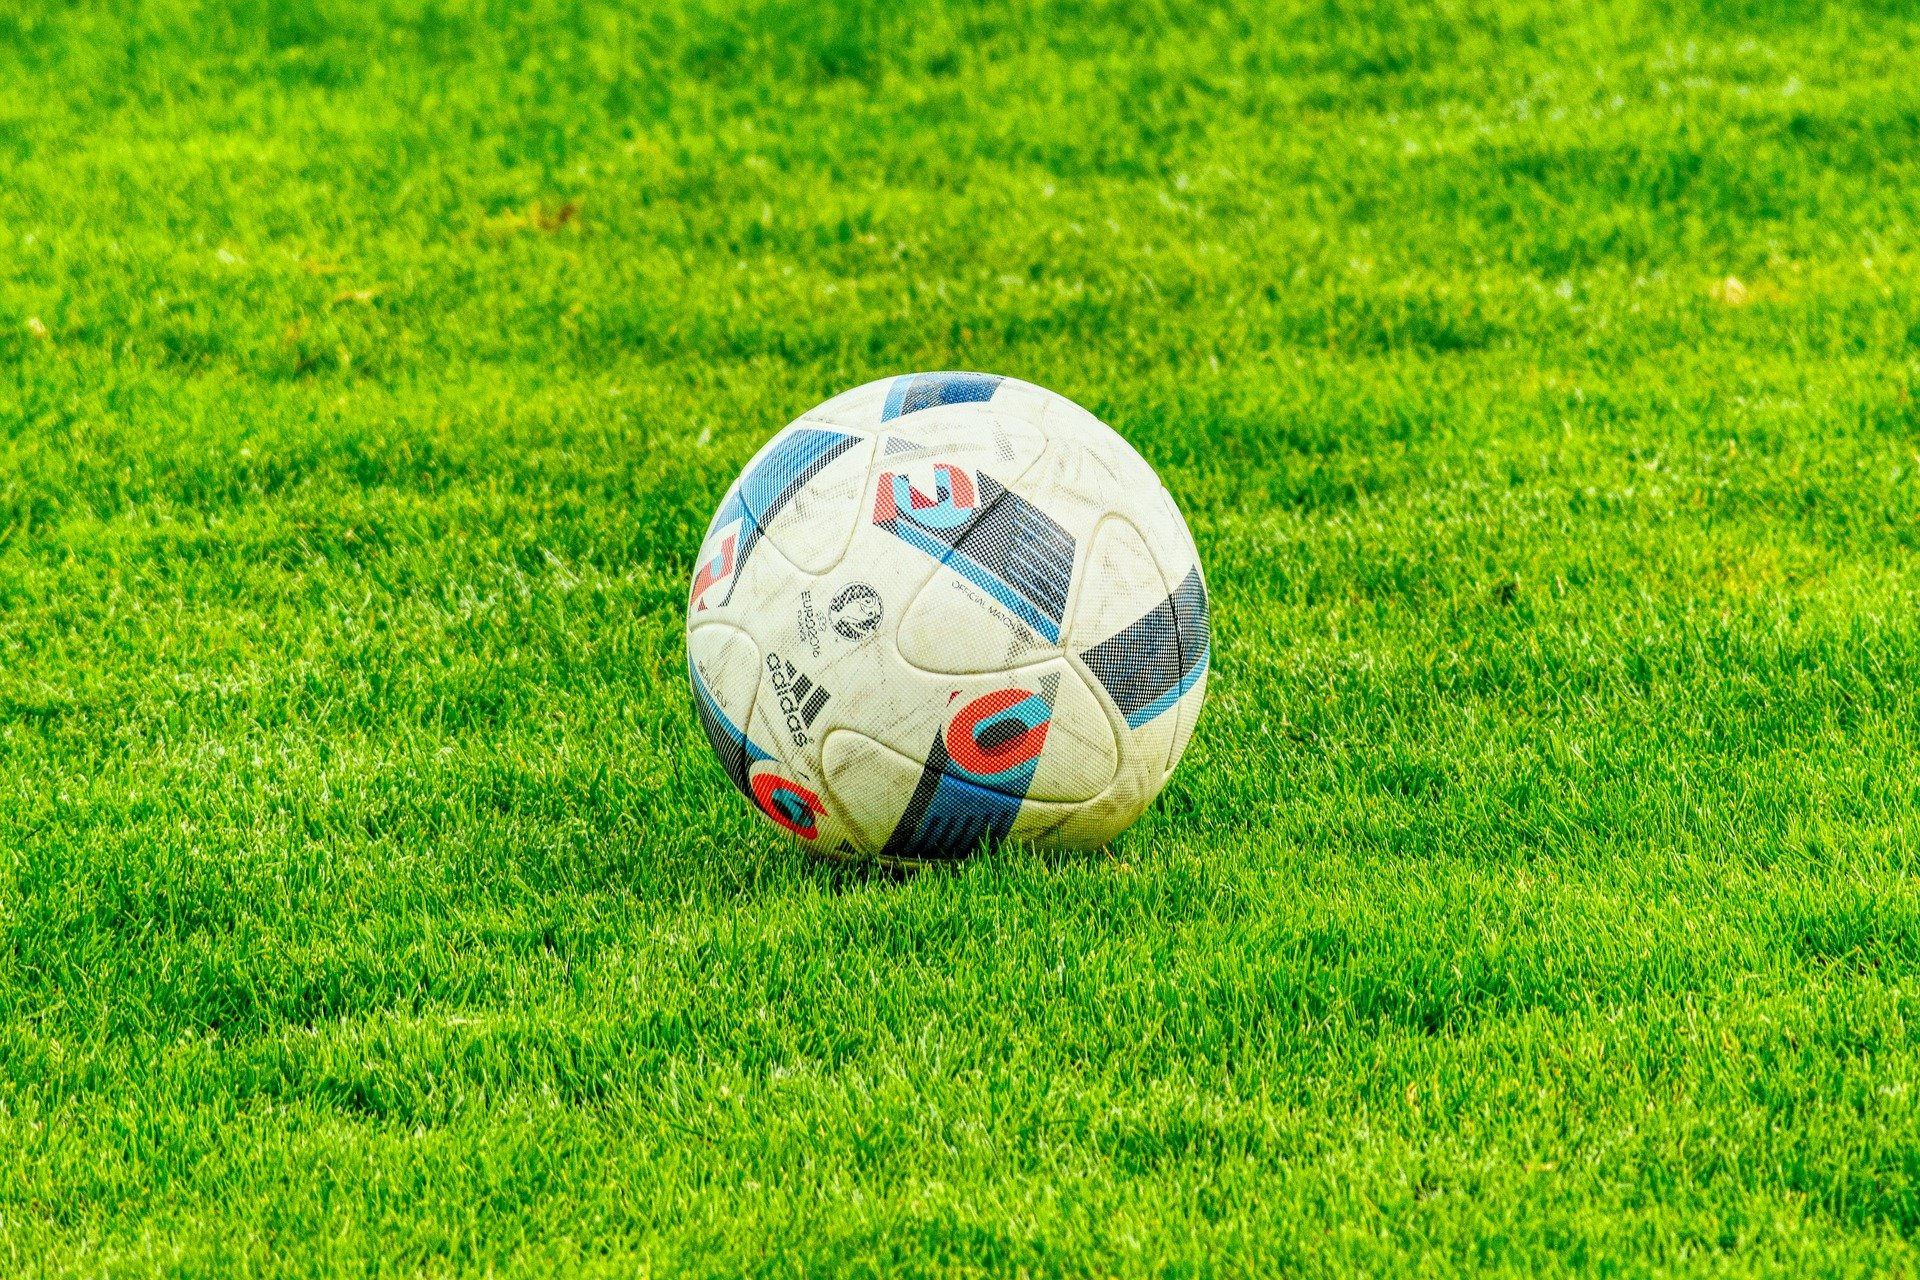 A soccer ball sitting on grass.